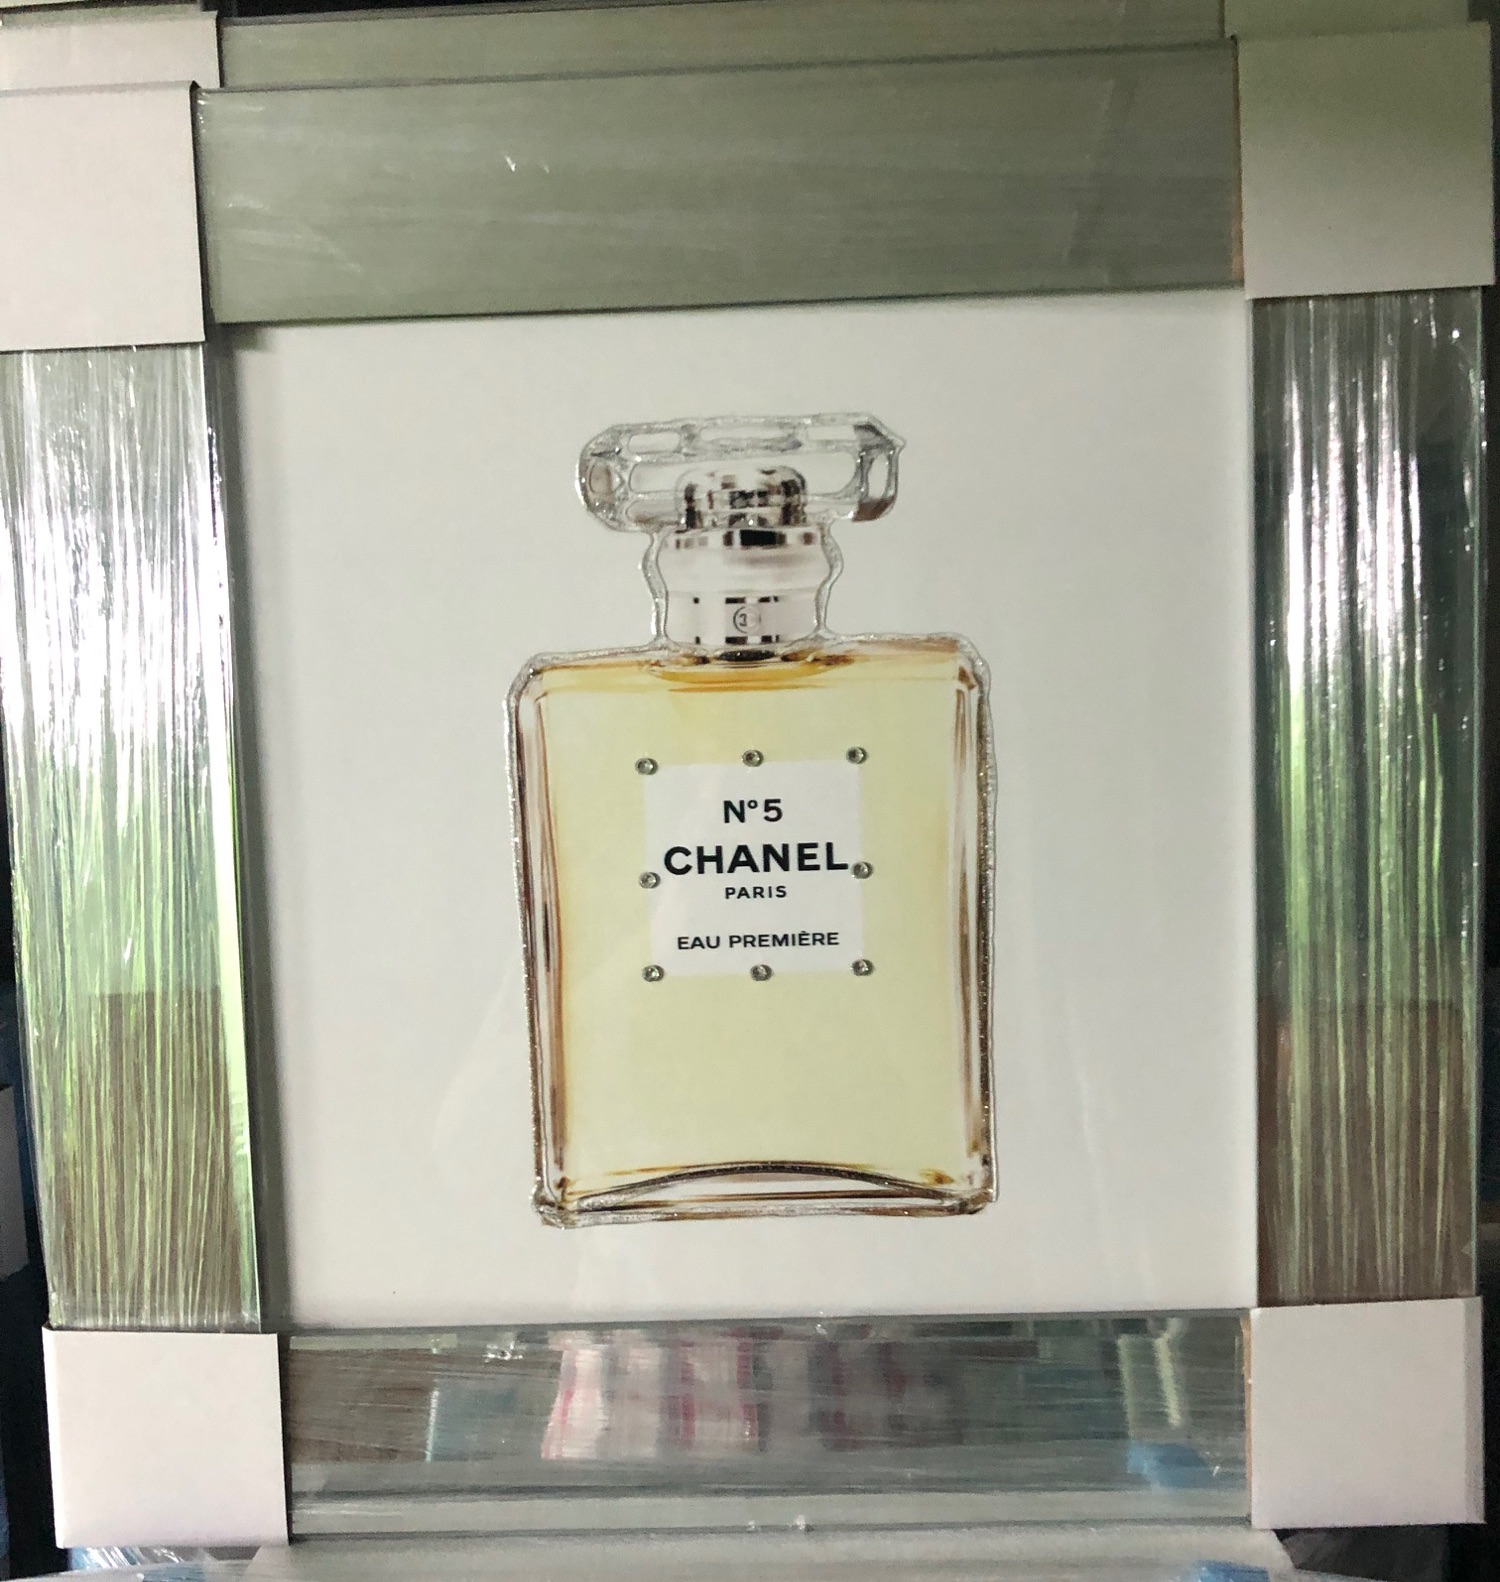 Sparkle Glitter Art "Chanel Perfume" mirror framed